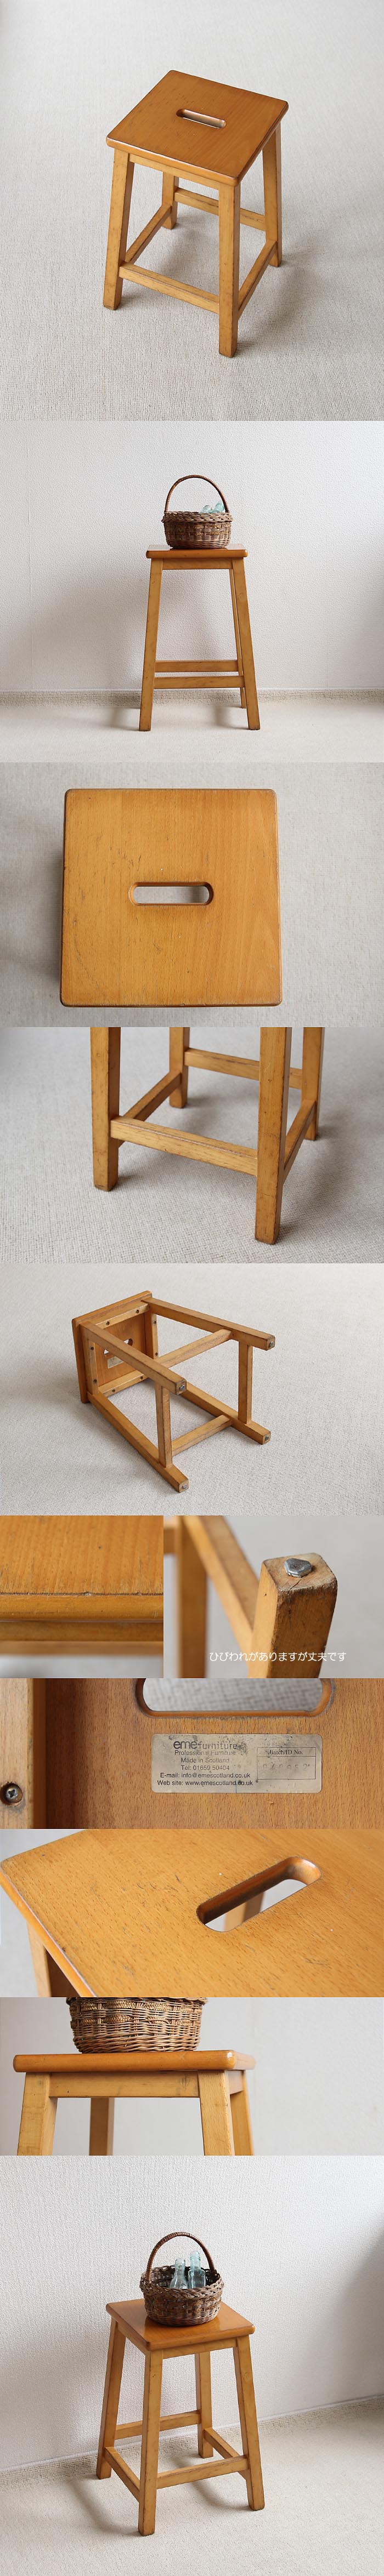 スコットランド ヴィンテージスタイル スクール スツール 木製 イギリス 学校椅子 家具「eme furniture」P-378